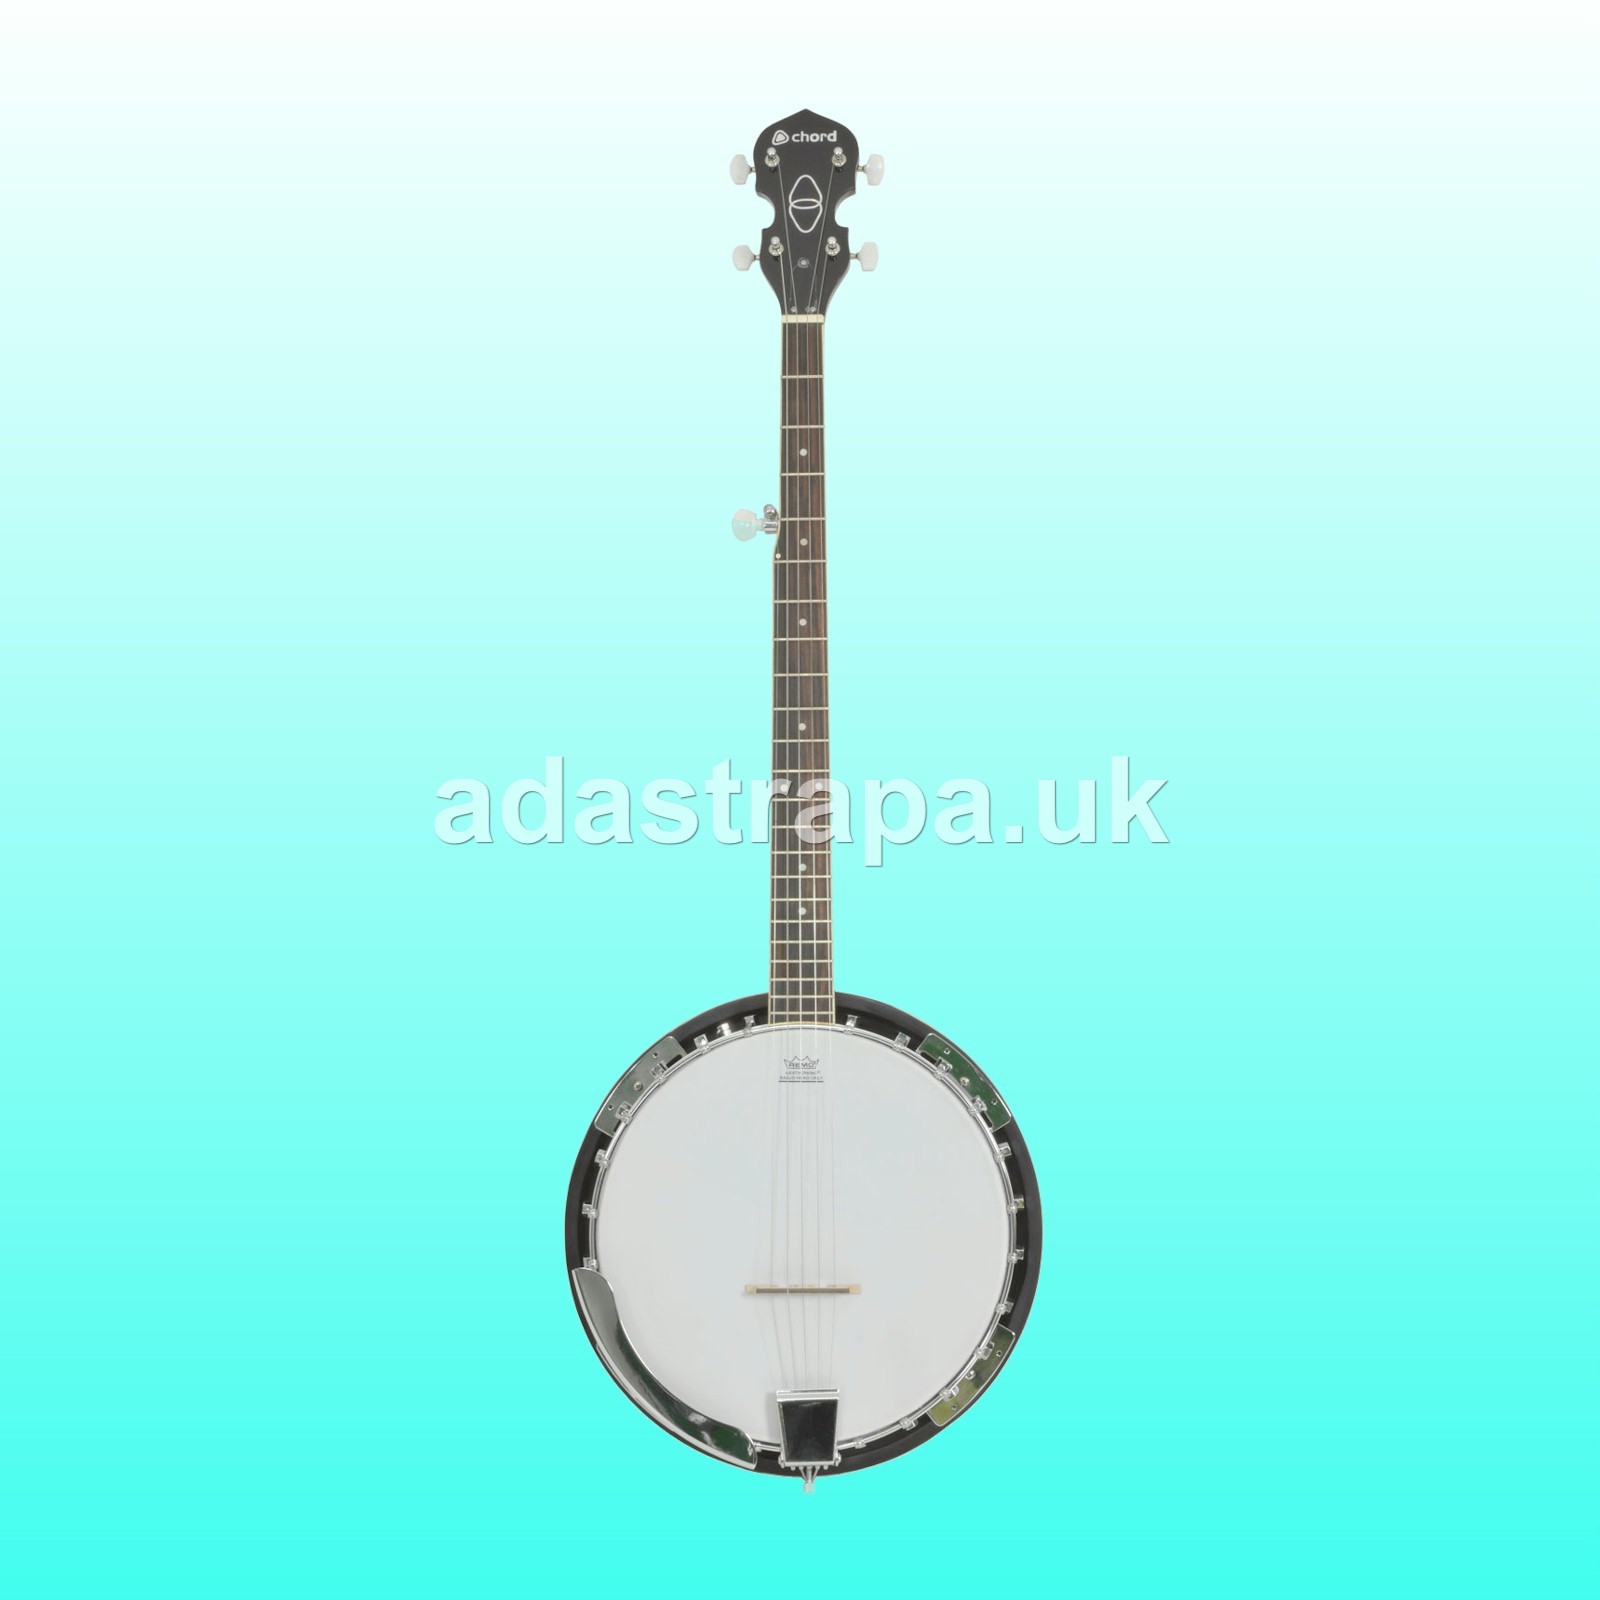 Chord BJ-5G 5-String G Banjo  - 175.505UK